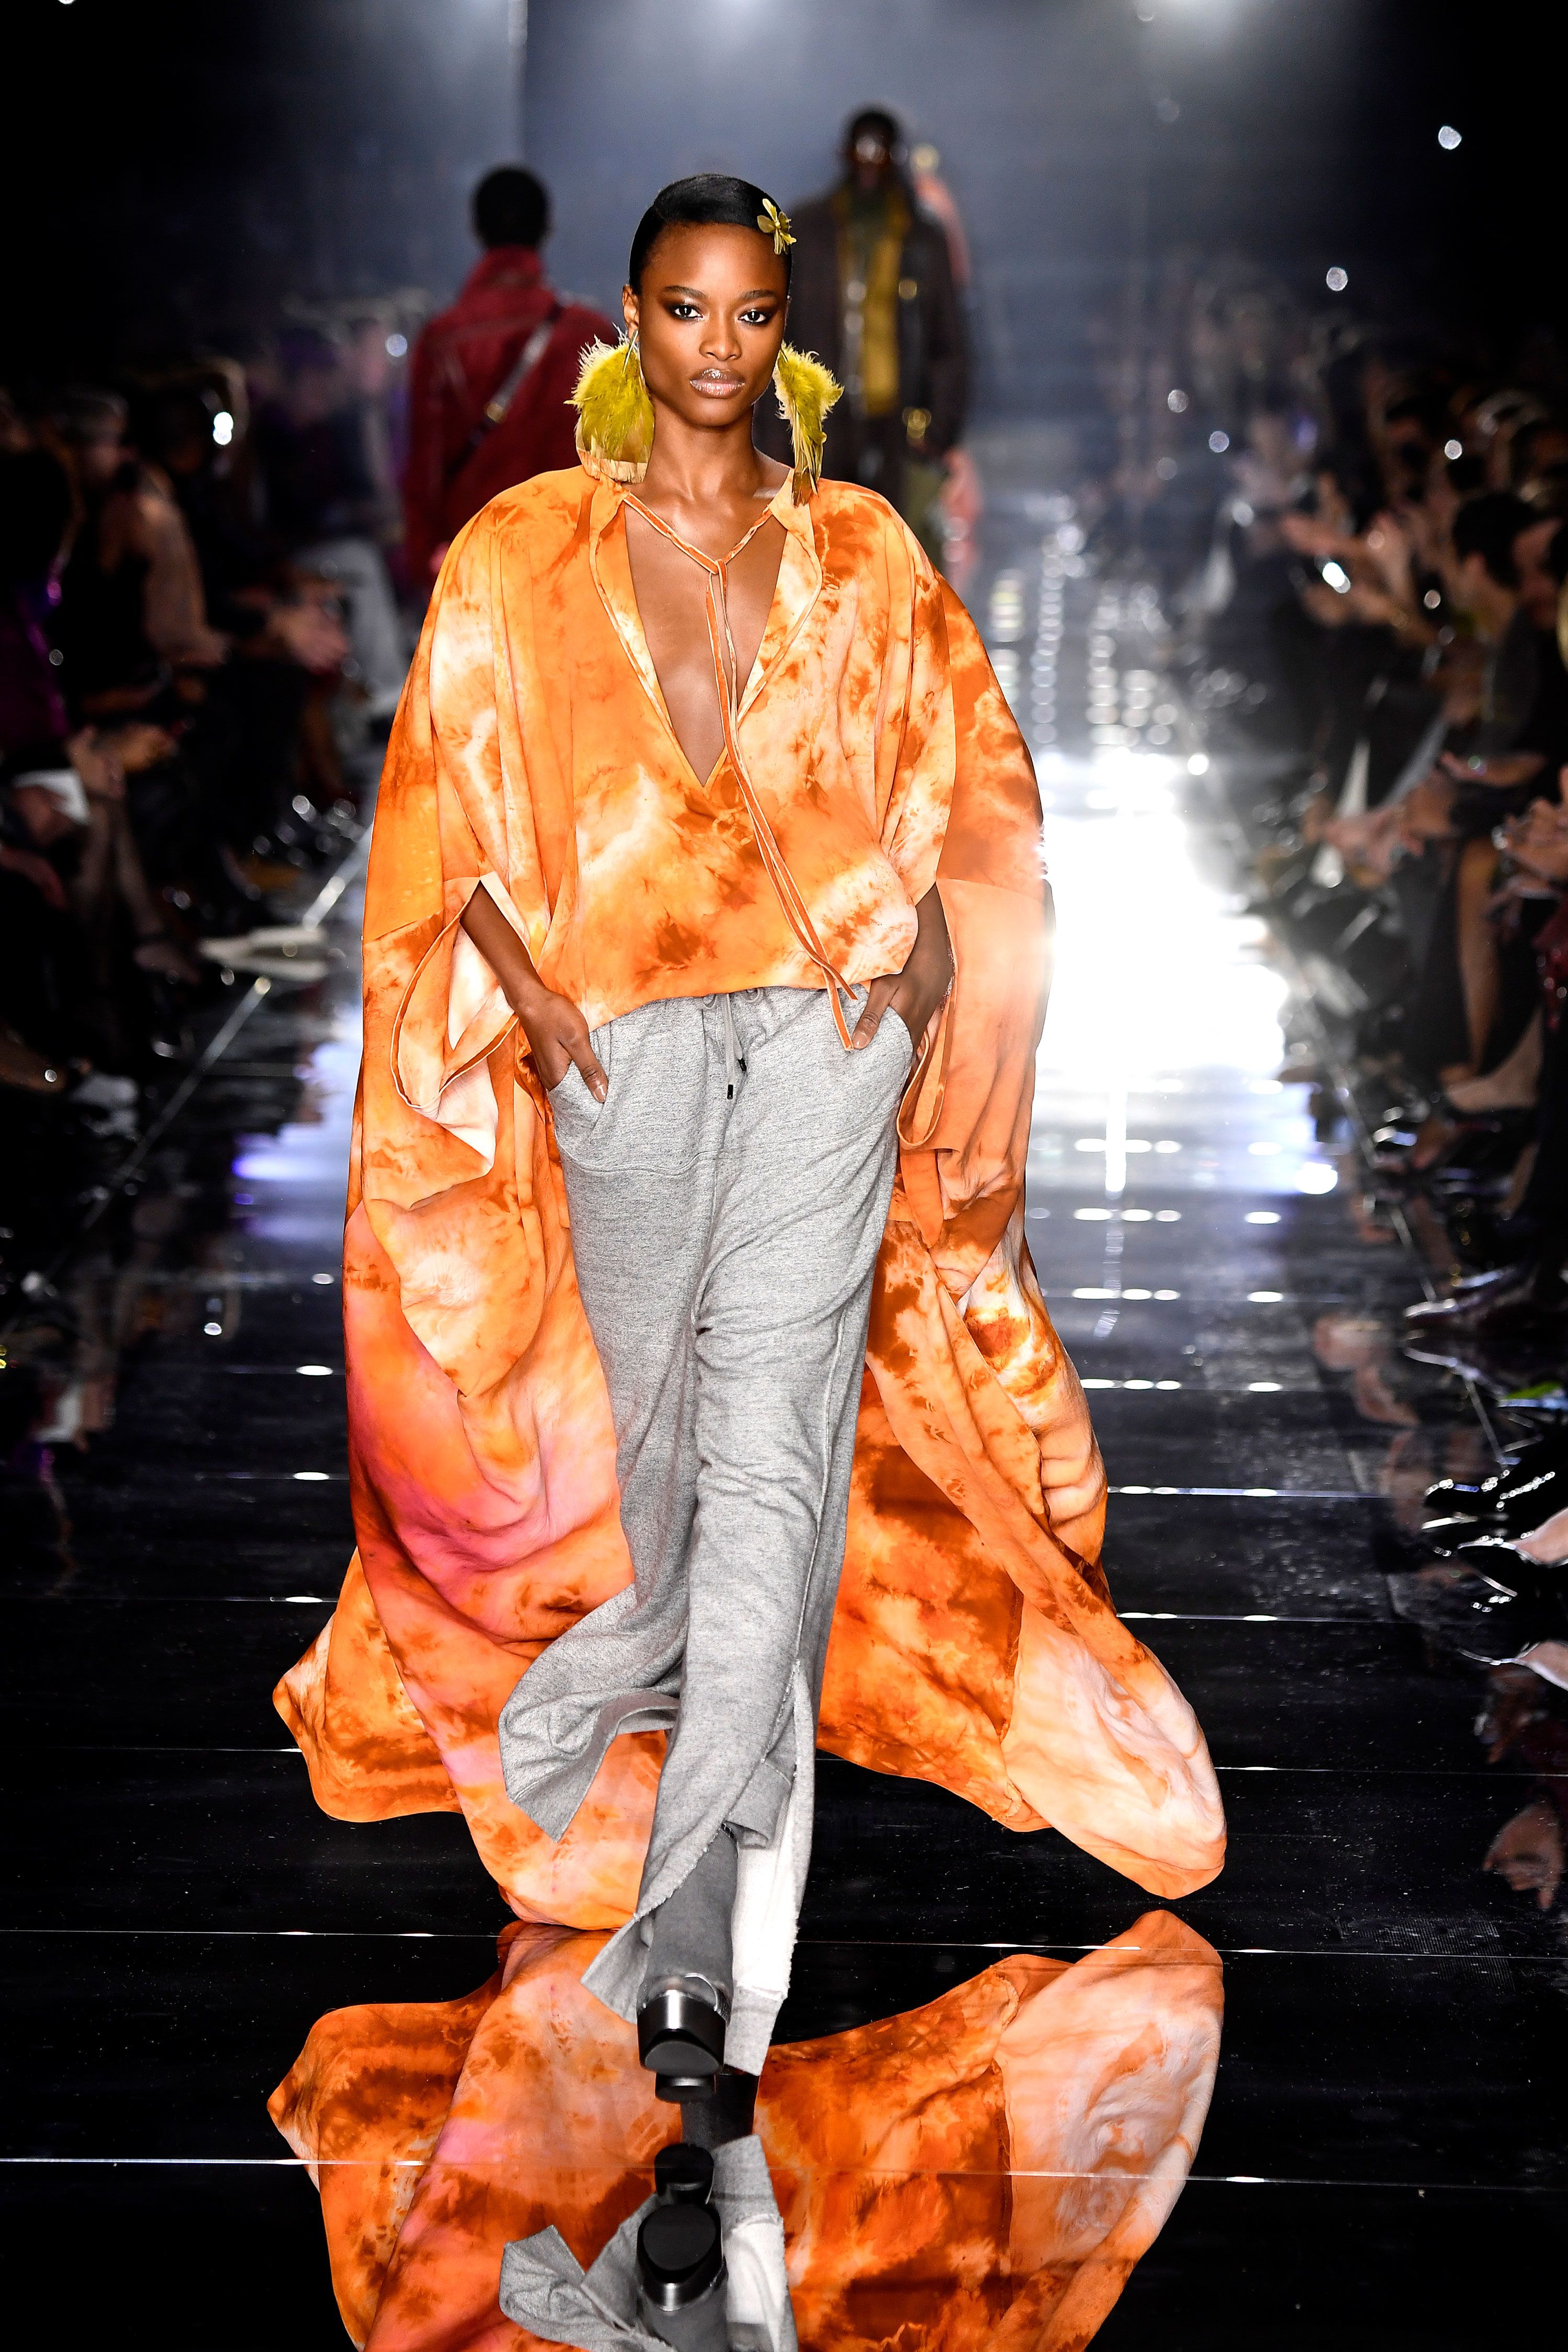 Tom Ford brings New York Fashion to LA